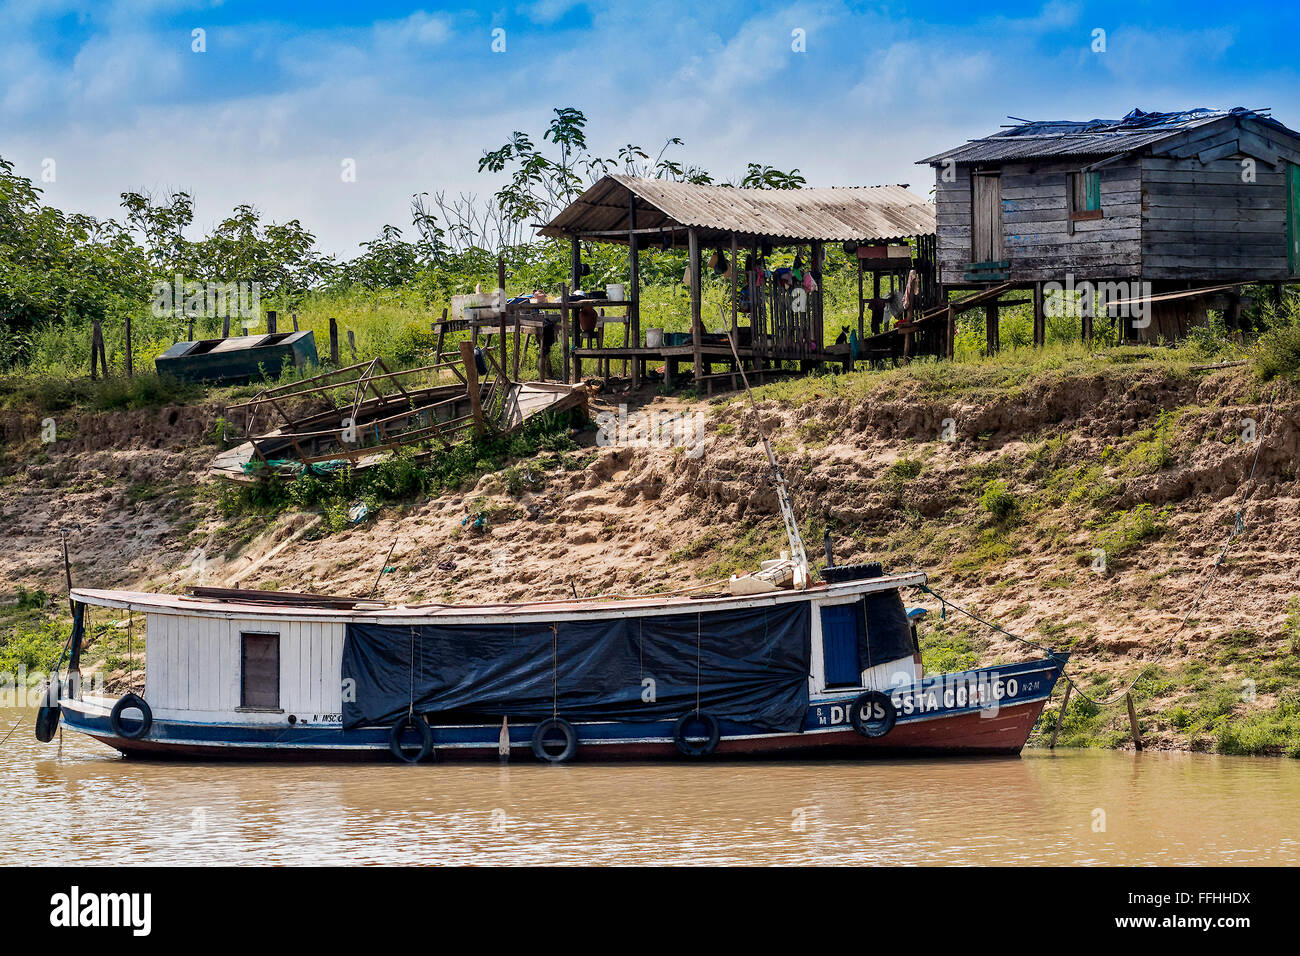 River Boat and House On Stilts Santarem Brazil Stock Photo